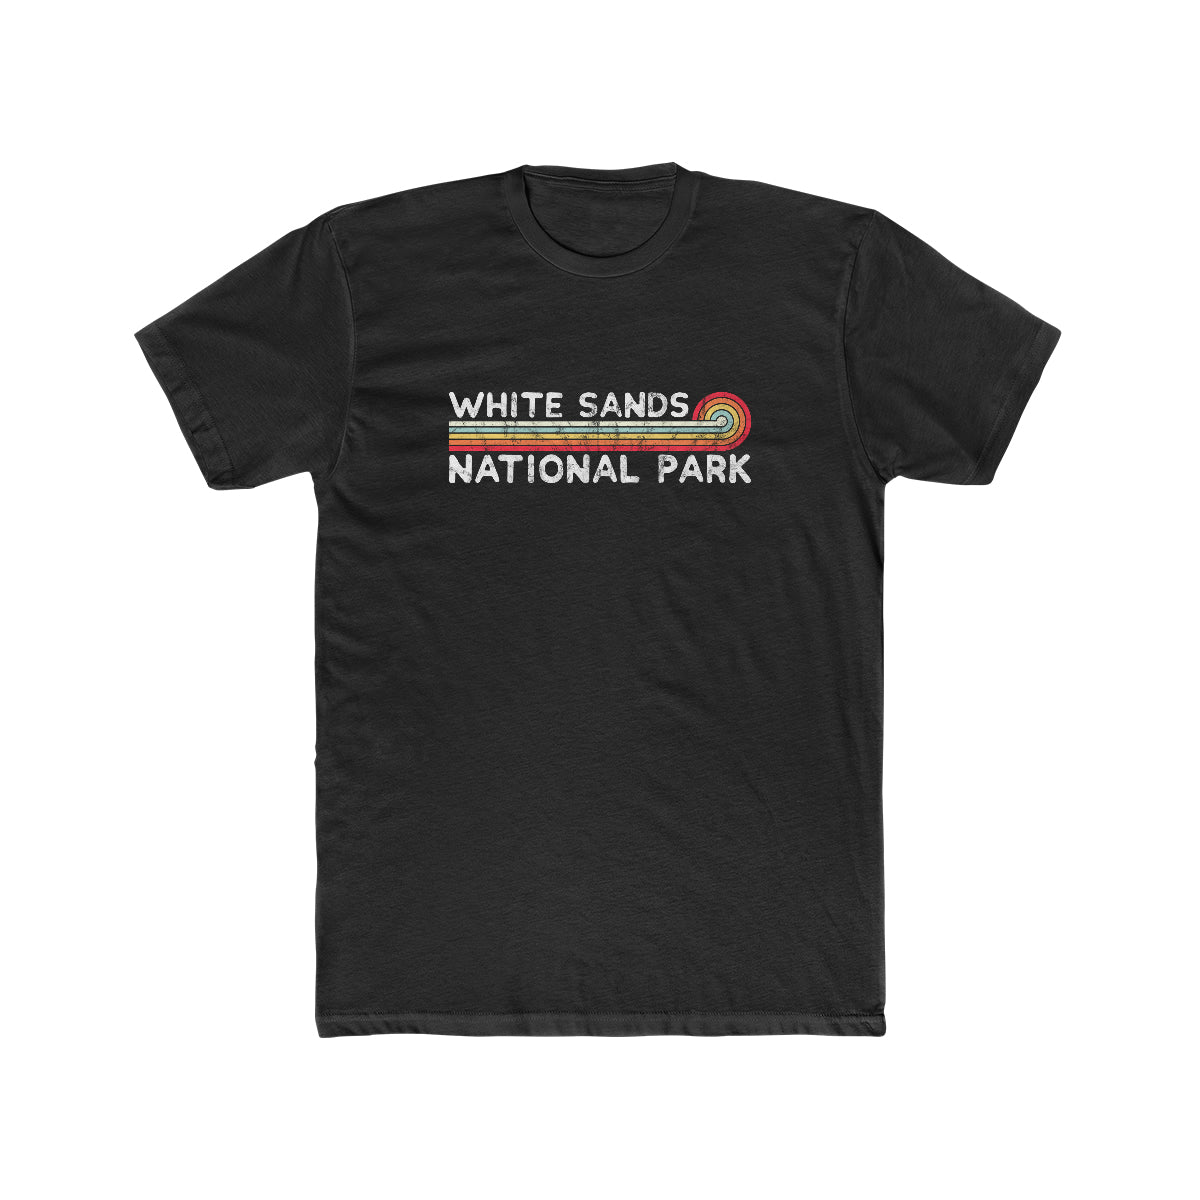 White Sands National Park T-Shirt - Vintage Stretched Sunrise